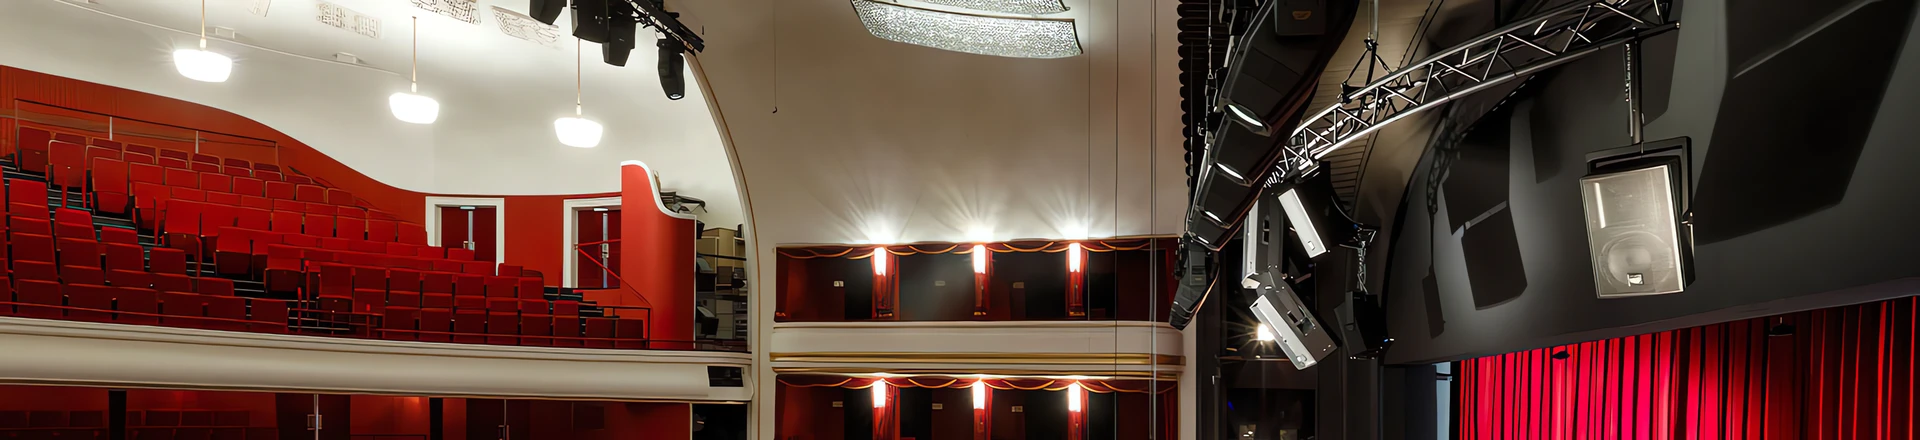 Innowacyjny system KV2 w wiedeńskim teatrze opery Volksoper